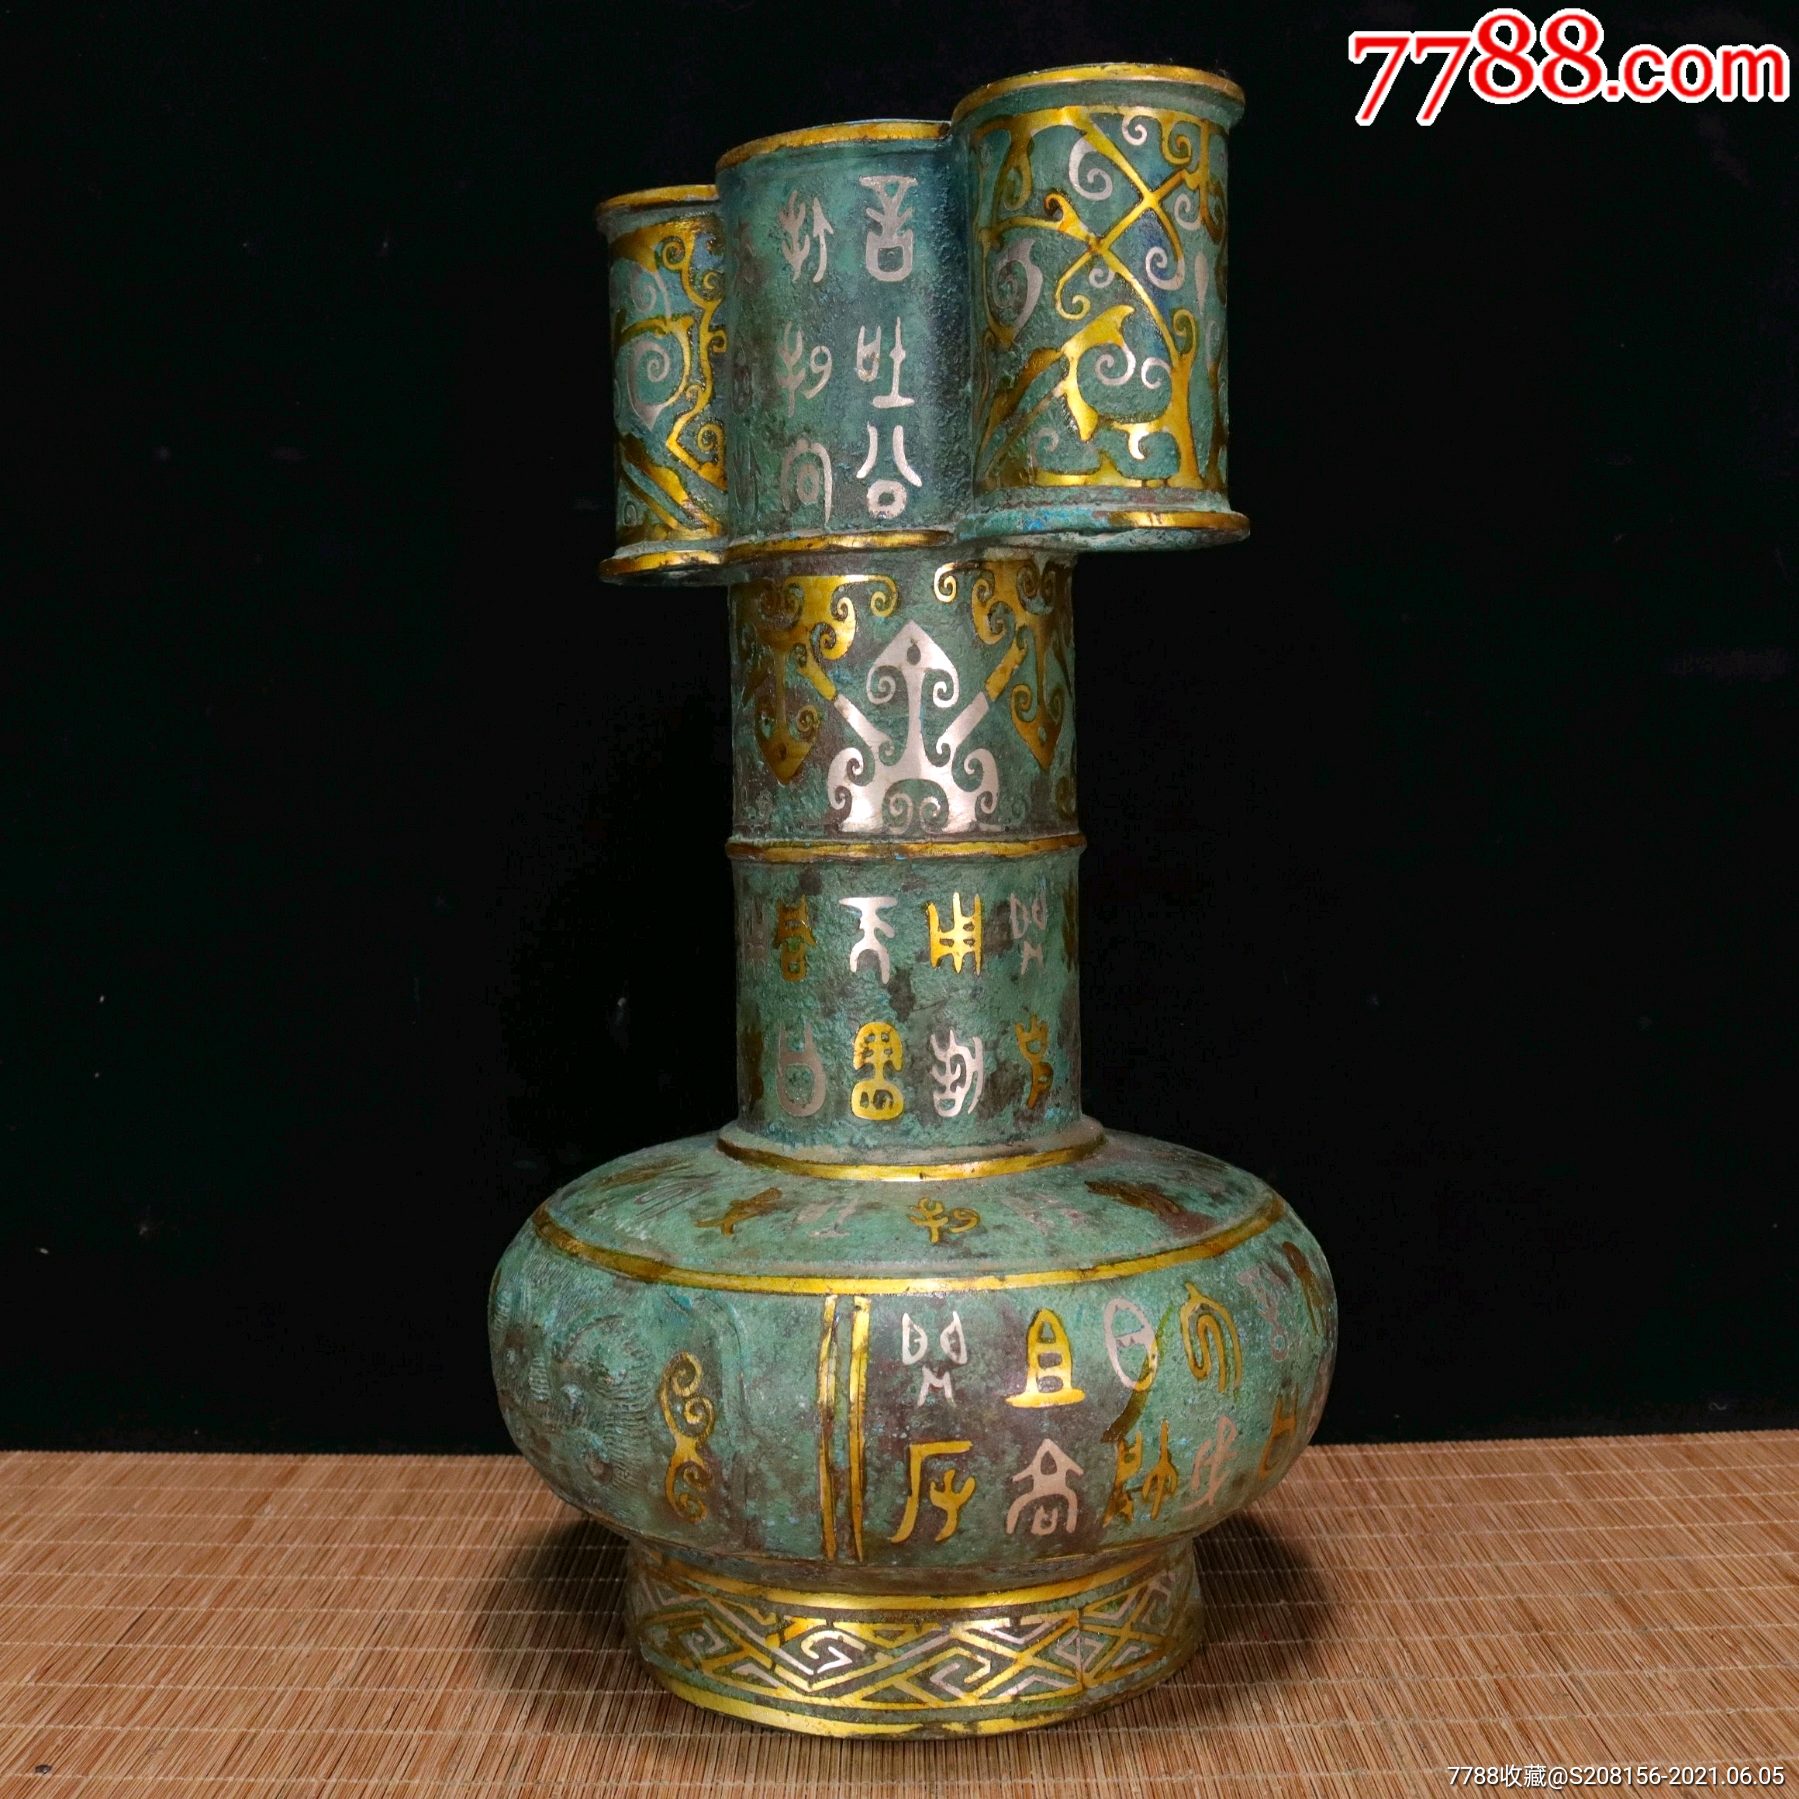 战汉时期——青铜错金银投壶,投壶是古代士大夫宴饮时做的一种投掷